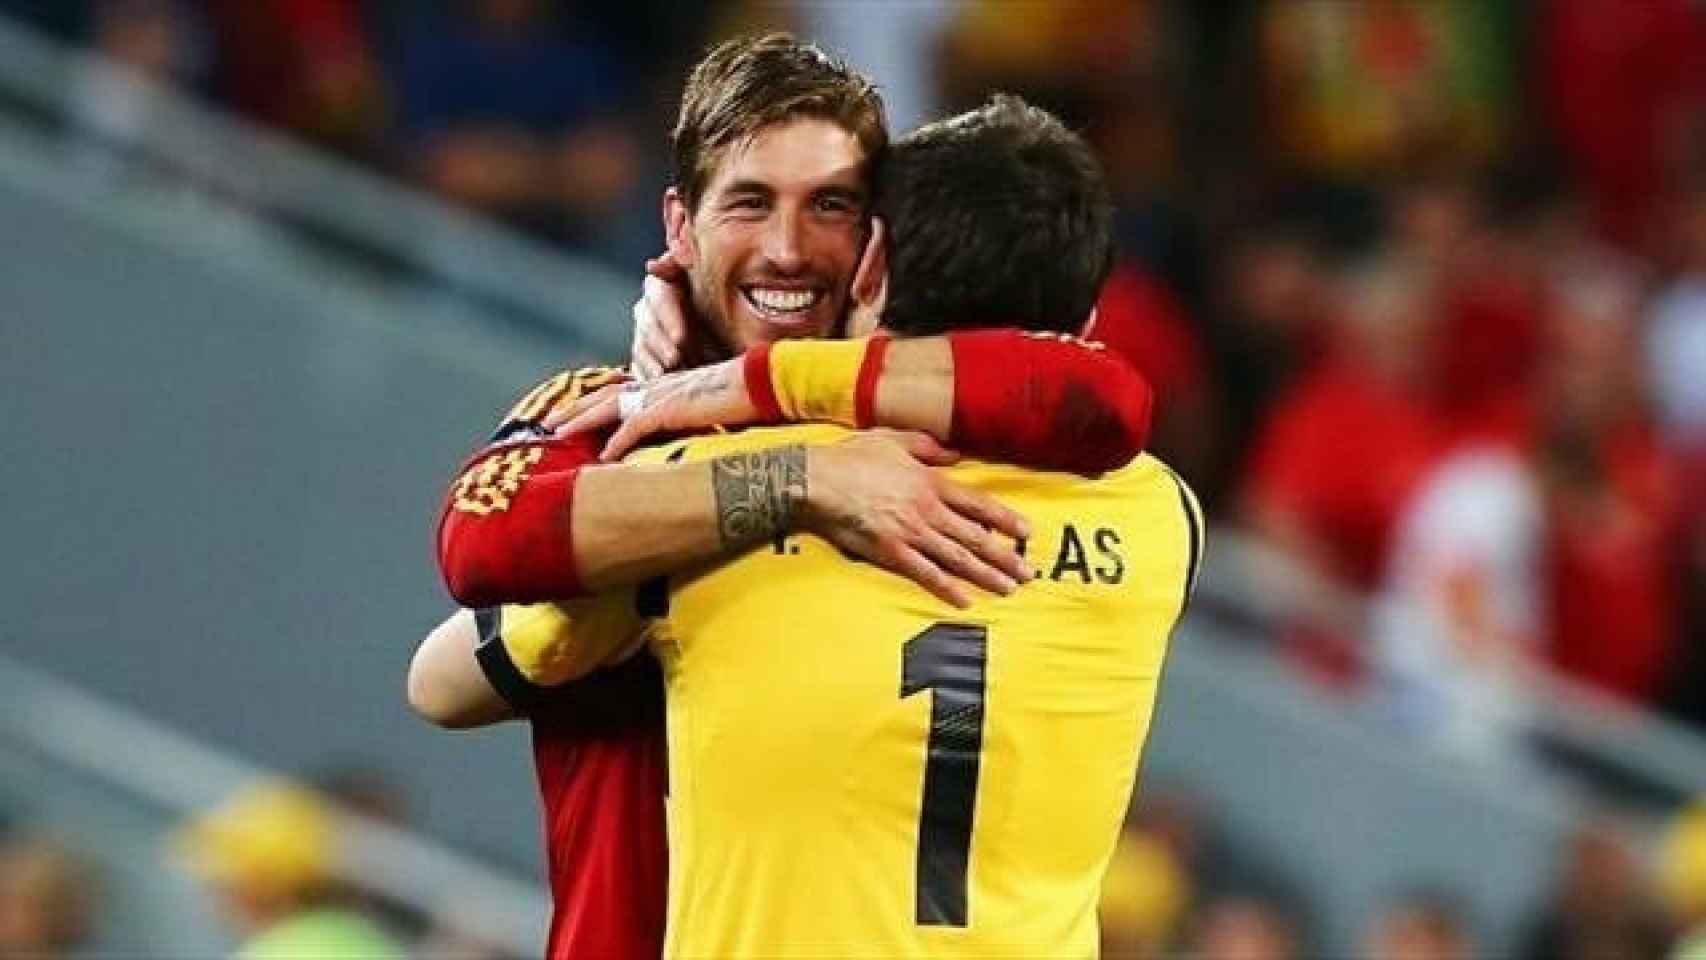 Iker Casillas felicita a Sergio Ramos